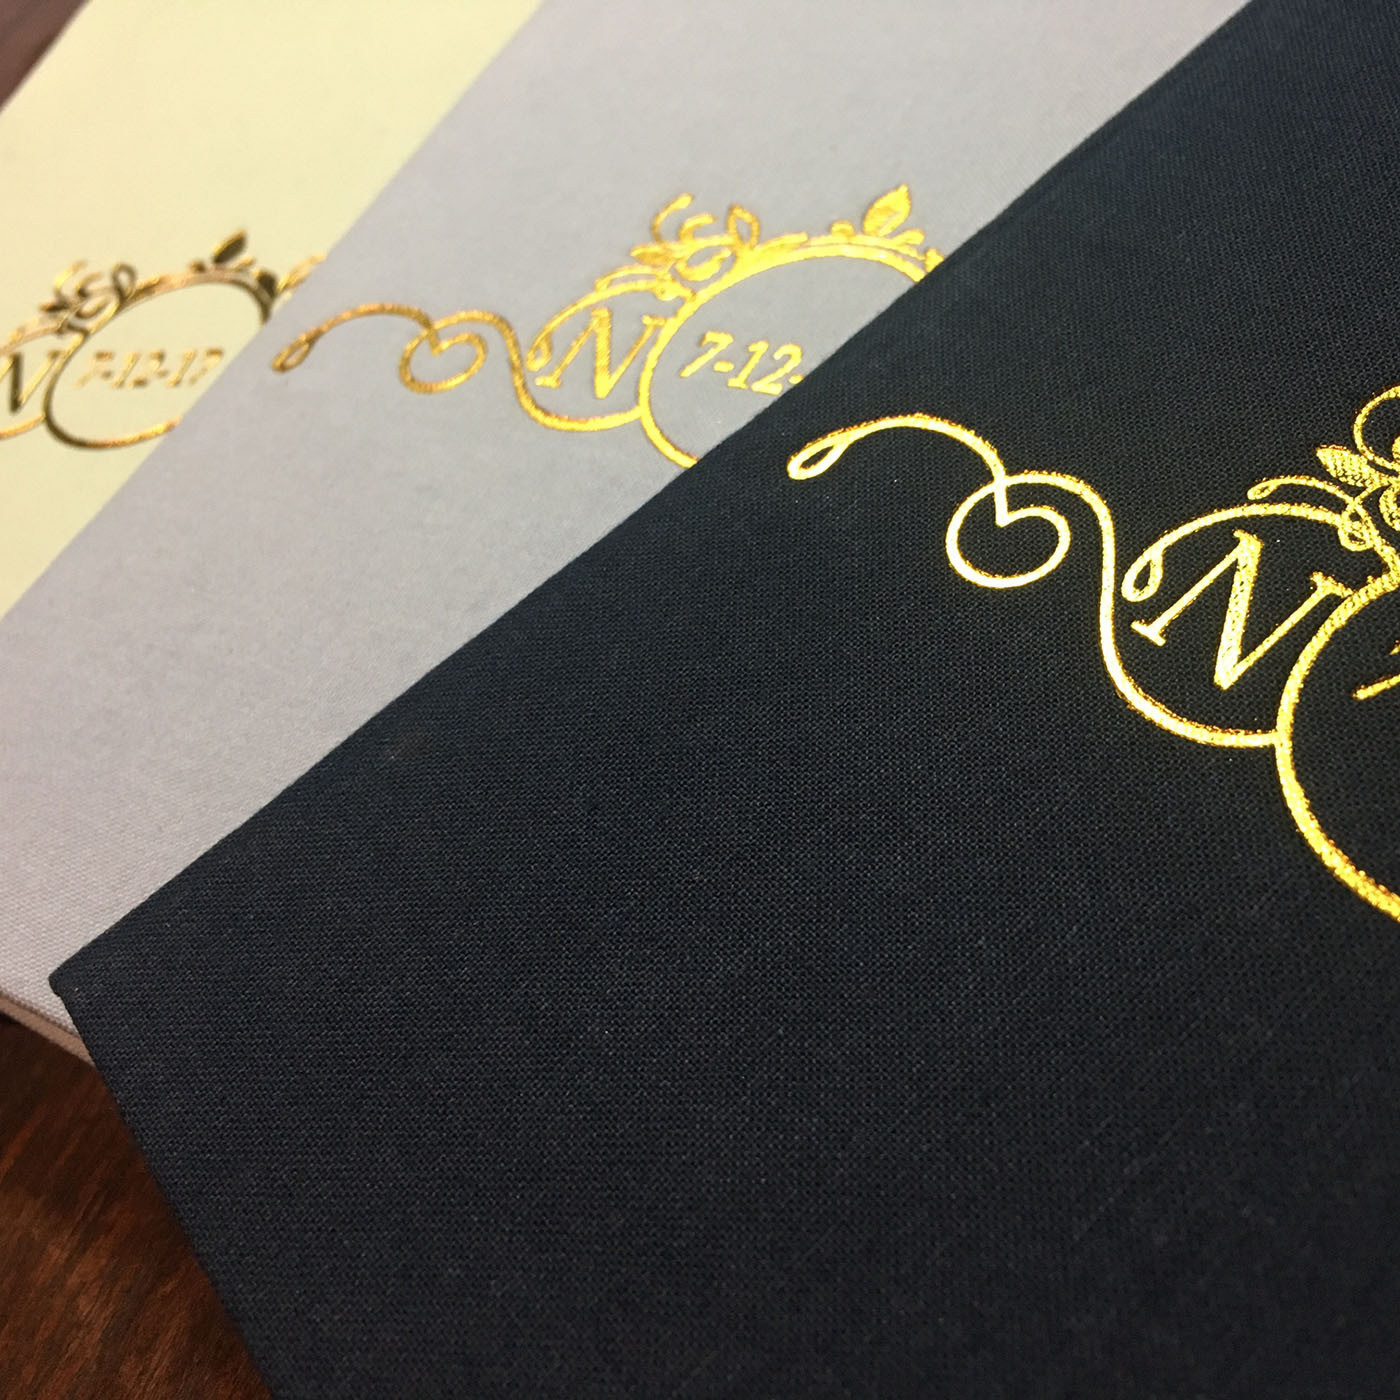 Foil Stamped Wedding Invitations
 Gold Foil Stamped Monogram & Wedding Date Linen Pocket